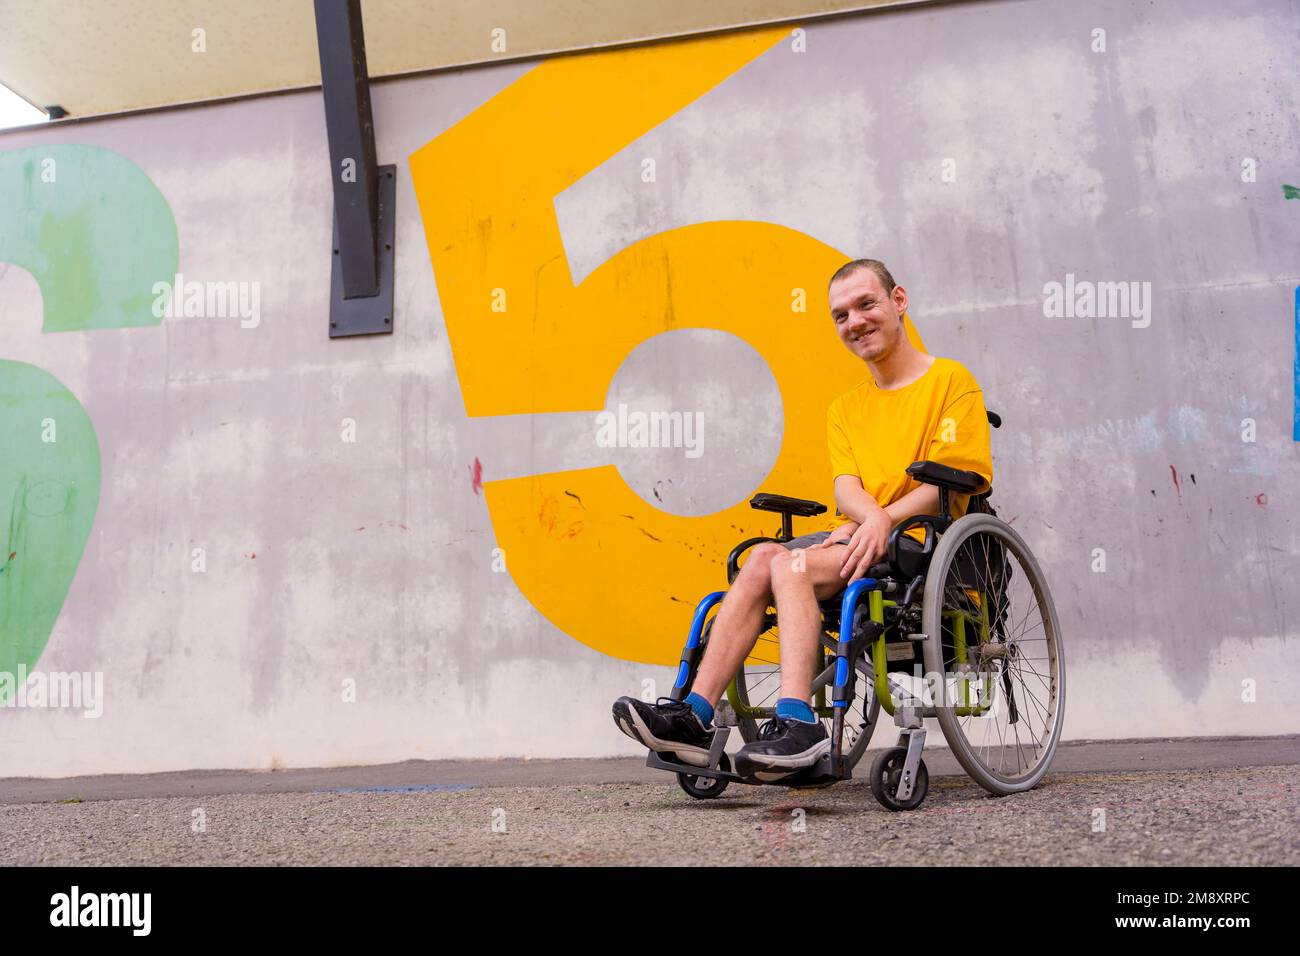 Eine behinderte Person in einem öffentlichen Park im Rollstuhl, die ein gelbes T-Shirt trägt Stockfoto